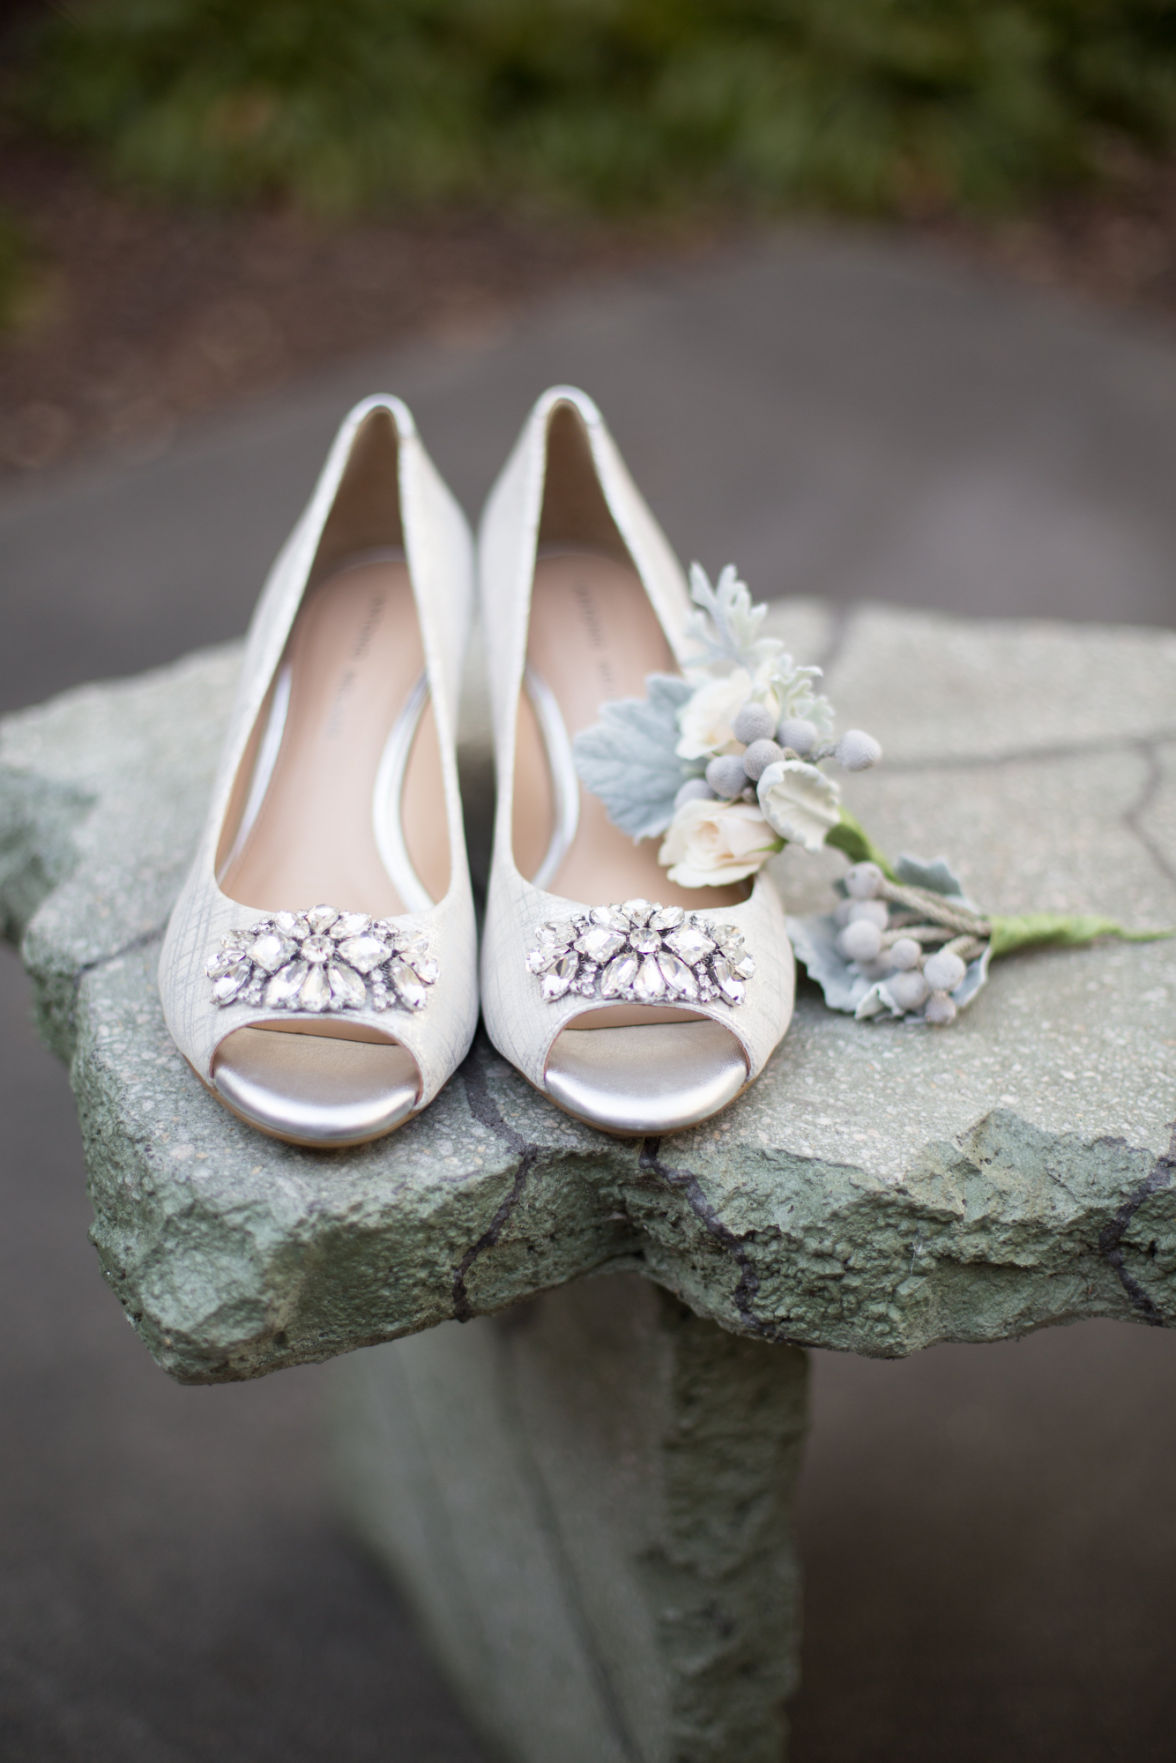 Photo Gallery | Wedding Essentials - Blog | omaha.com